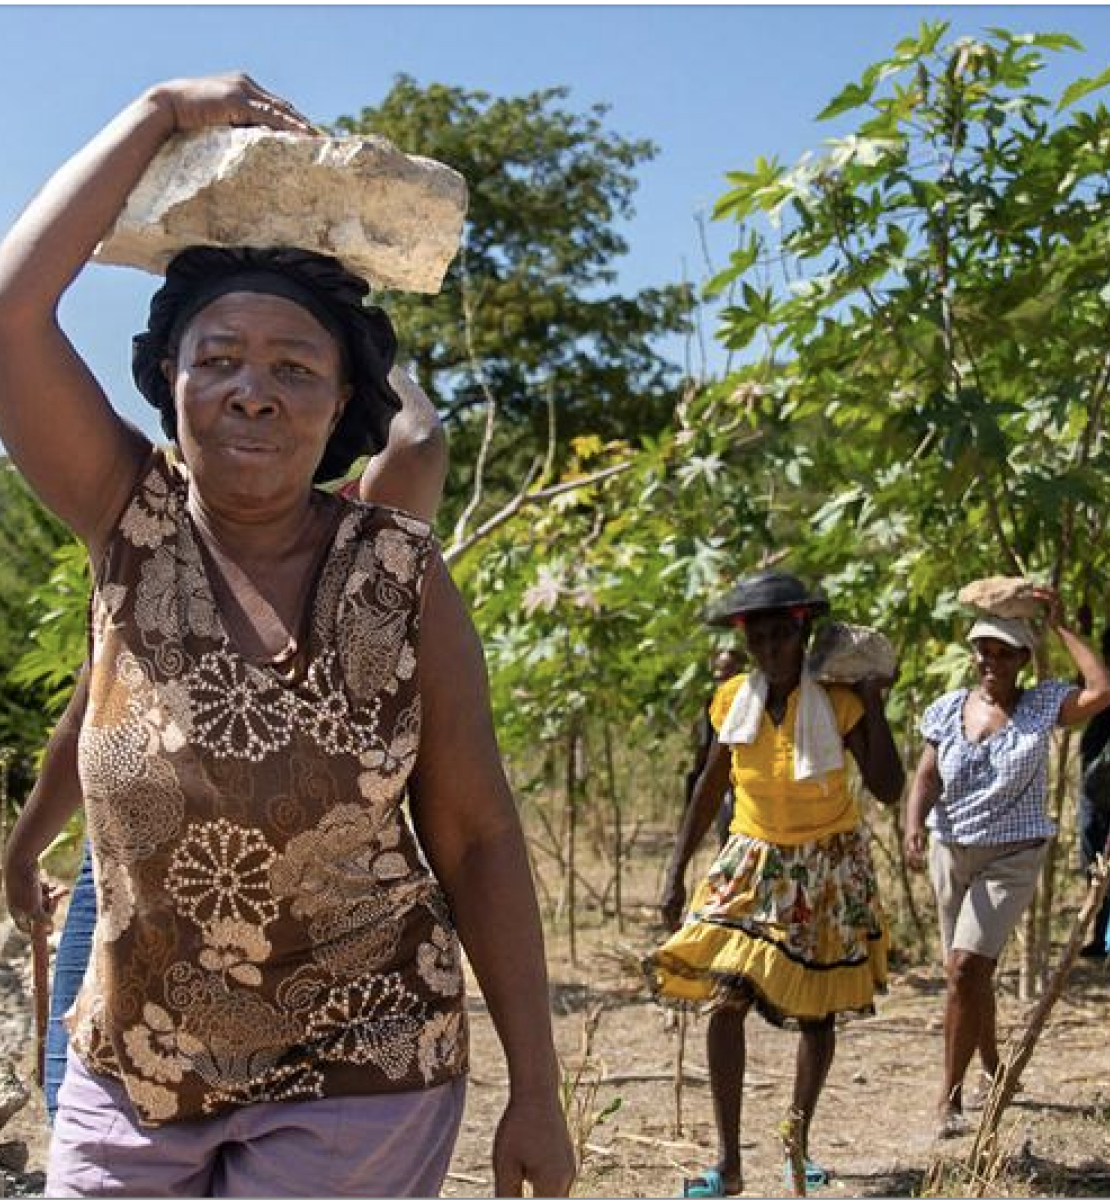 En Haïti, au pied d’une colline, des femmes marchent les unes derrière les autres en tenant une pierre sur la tête.